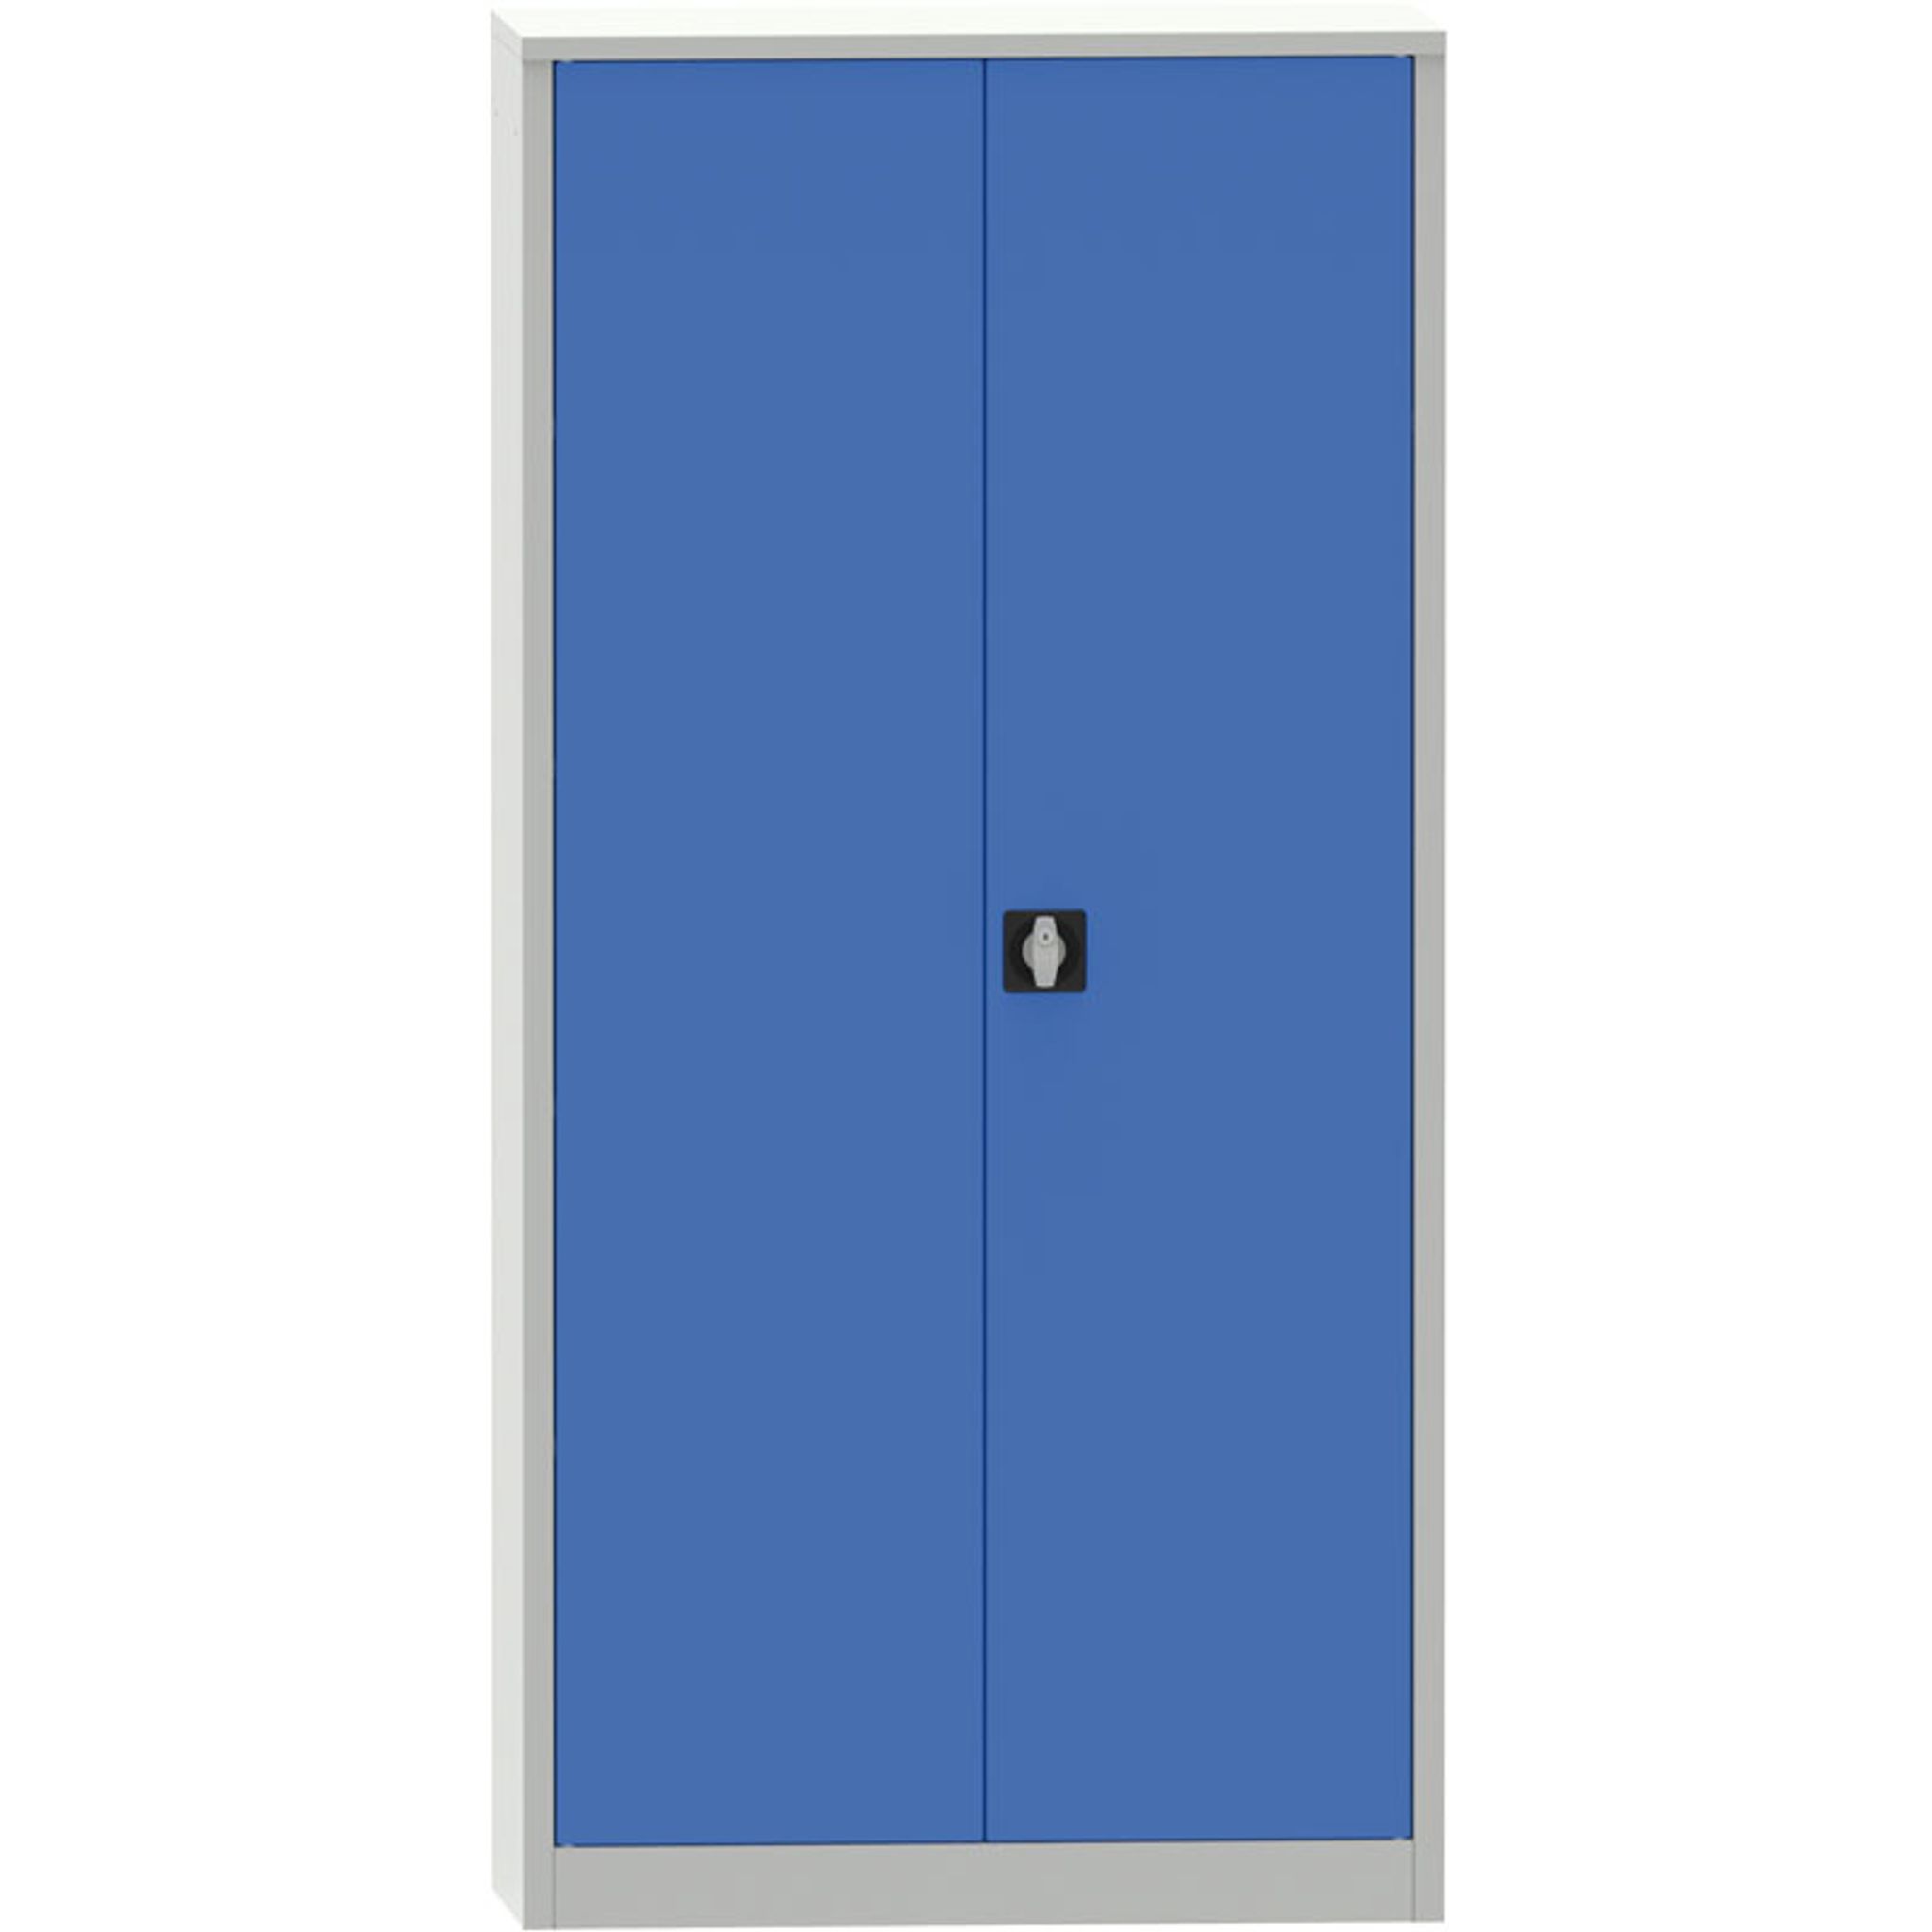 Mehrzweck-Metallschrank, 4 Regalböden, 1950 x 950 x 500 mm, blaue Tür